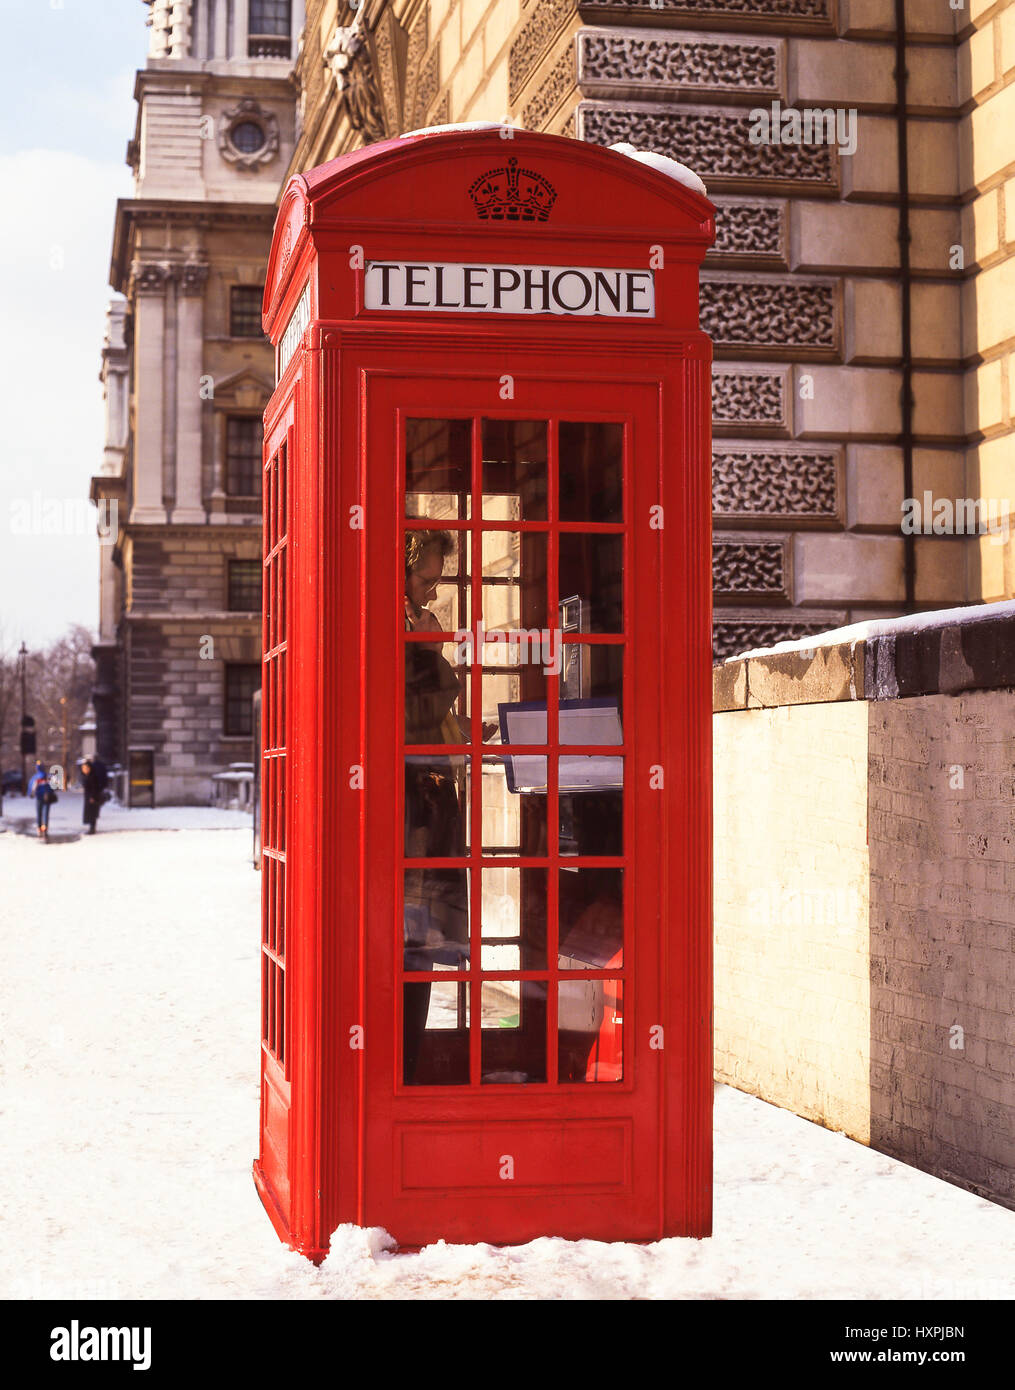 Cabine téléphonique rouge traditionnel de la neige en hiver, la place du Parlement, la ville de Westminster, Greater London, Angleterre, Royaume-Uni Banque D'Images